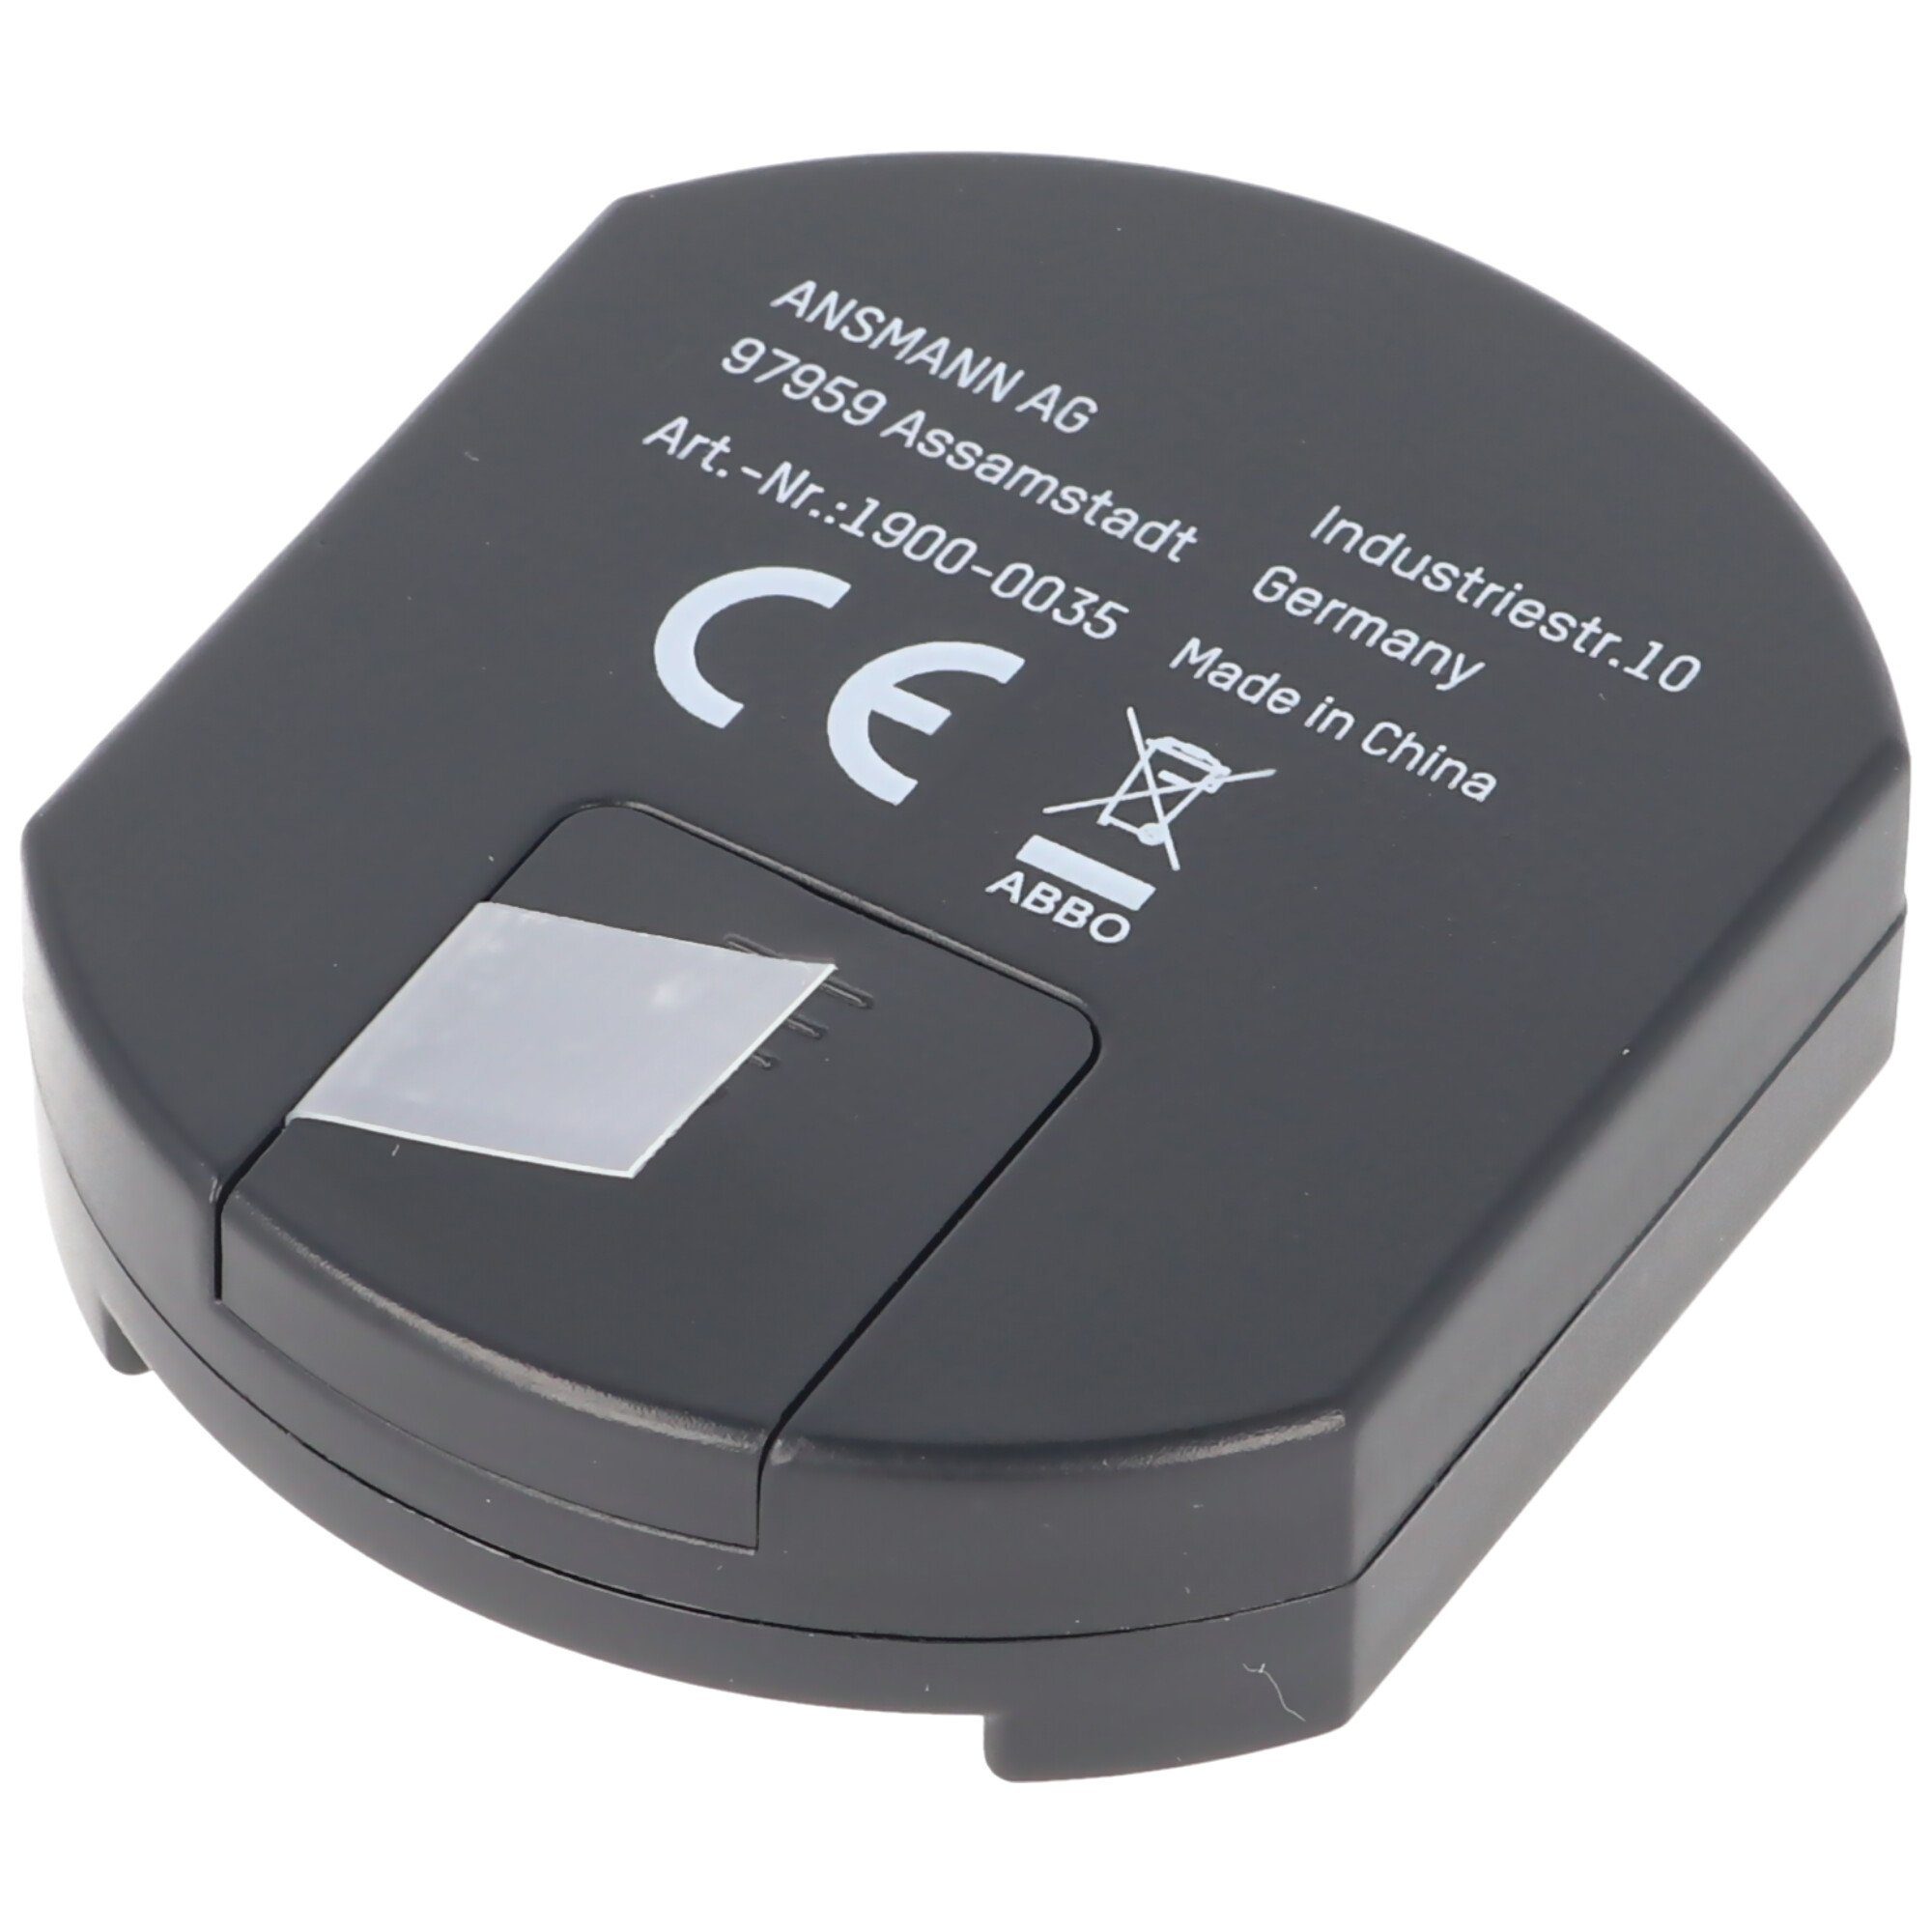 Batterie Knopfzellent ANSMANN® Batterietester Alkaline Lithium für der Knopfzellen, und